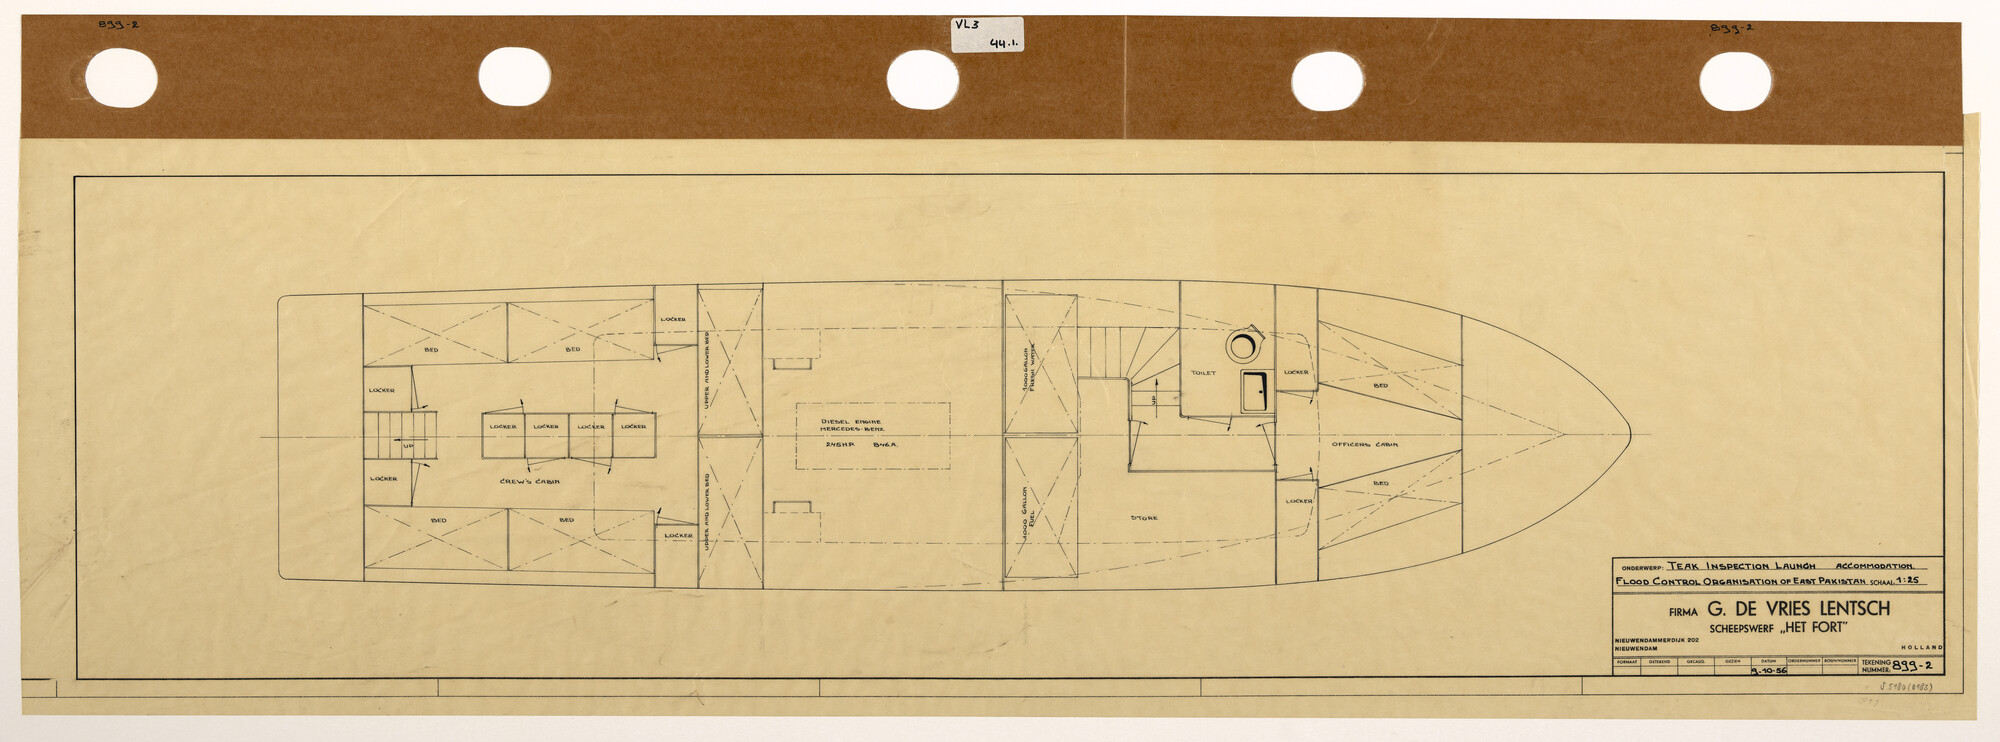 S.5180(0183); Indelingsplan van een houten inspectievaartuig; technische tekening